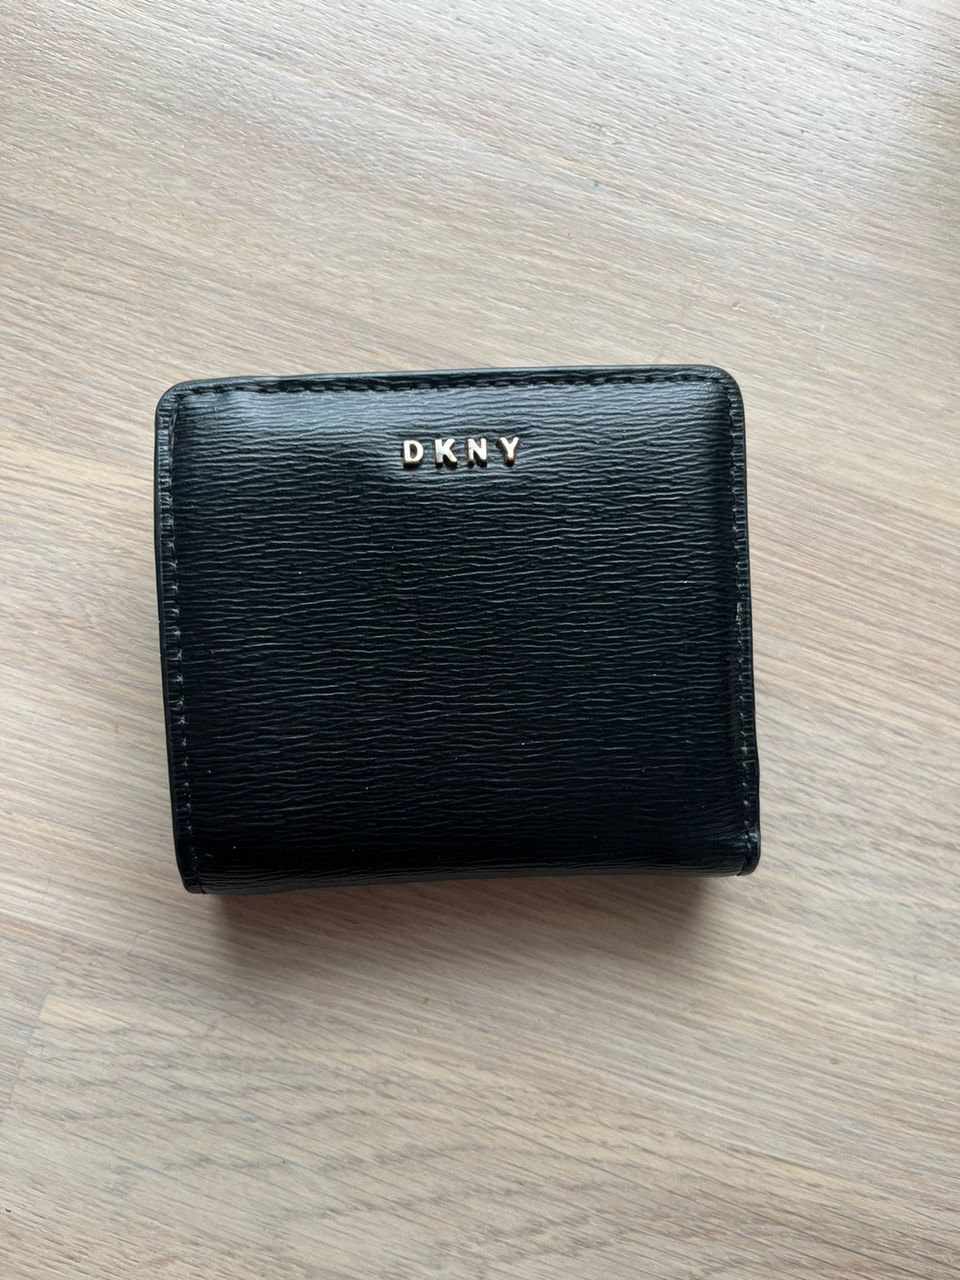 DKNY aito lompakko